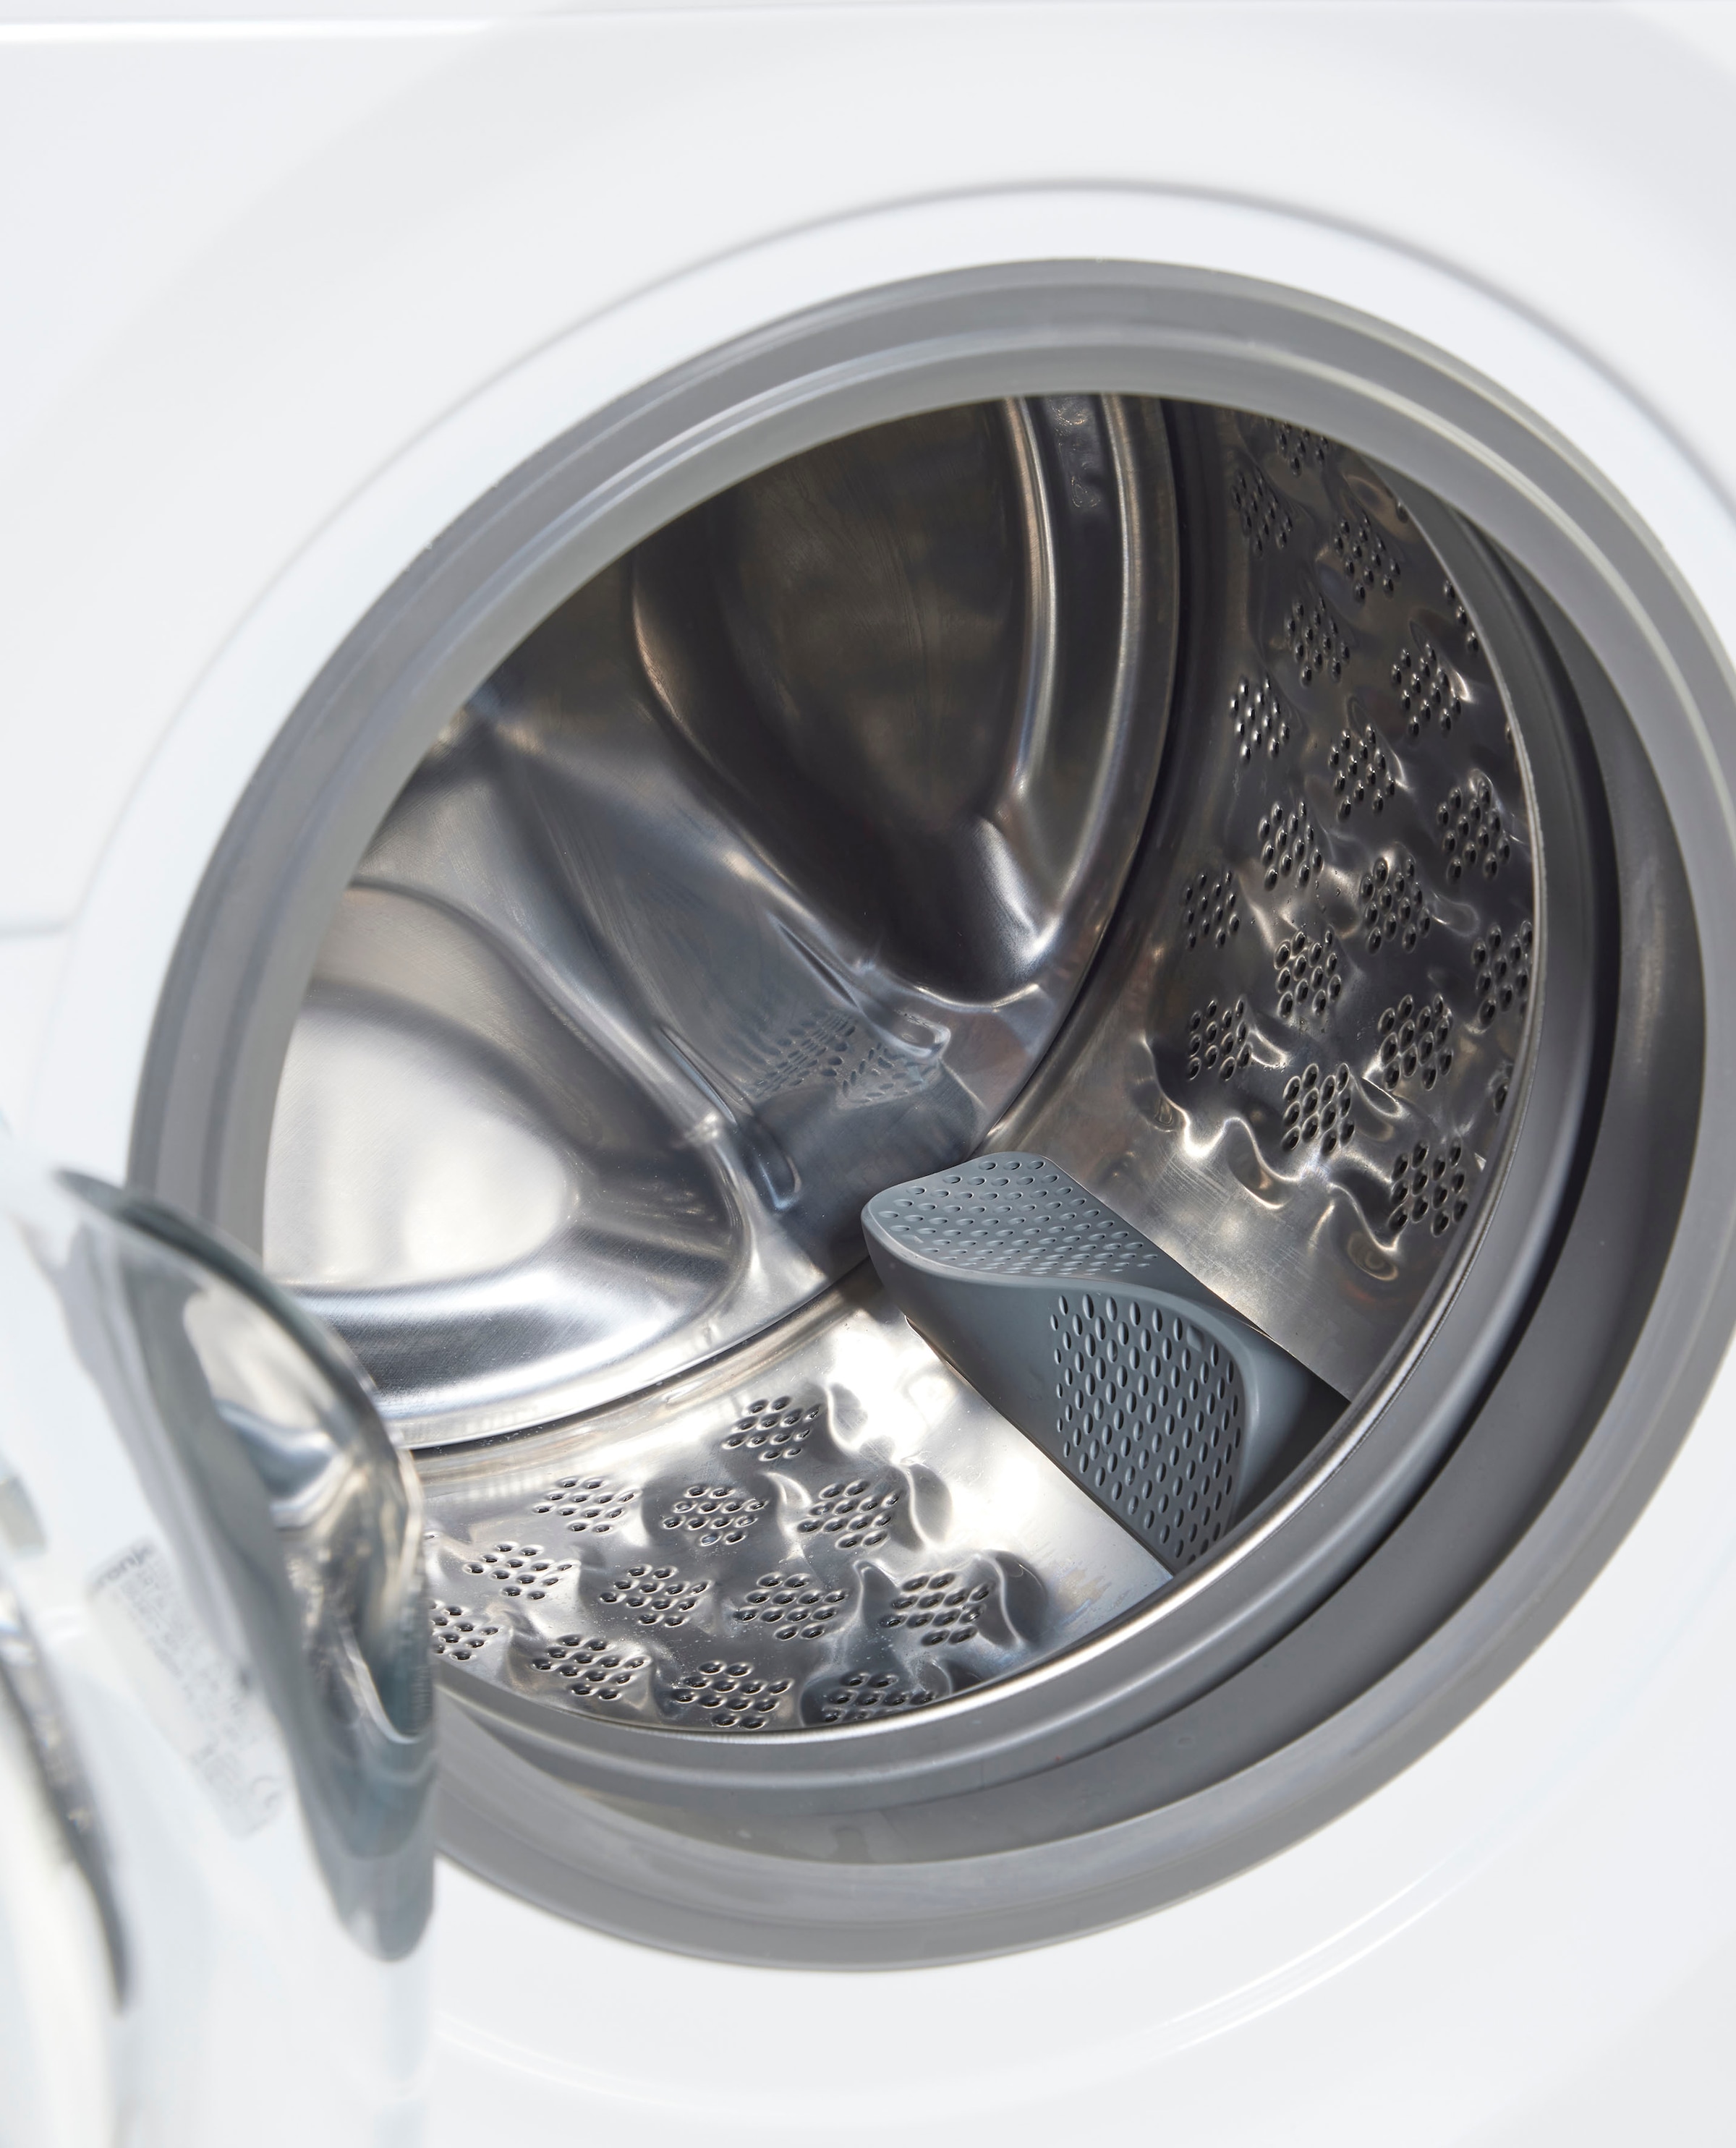 GORENJE Waschmaschine »WNEI94APS«, WNEI94APS, 9 kg, 1400 U/min mit 3 Jahren  XXL Garantie